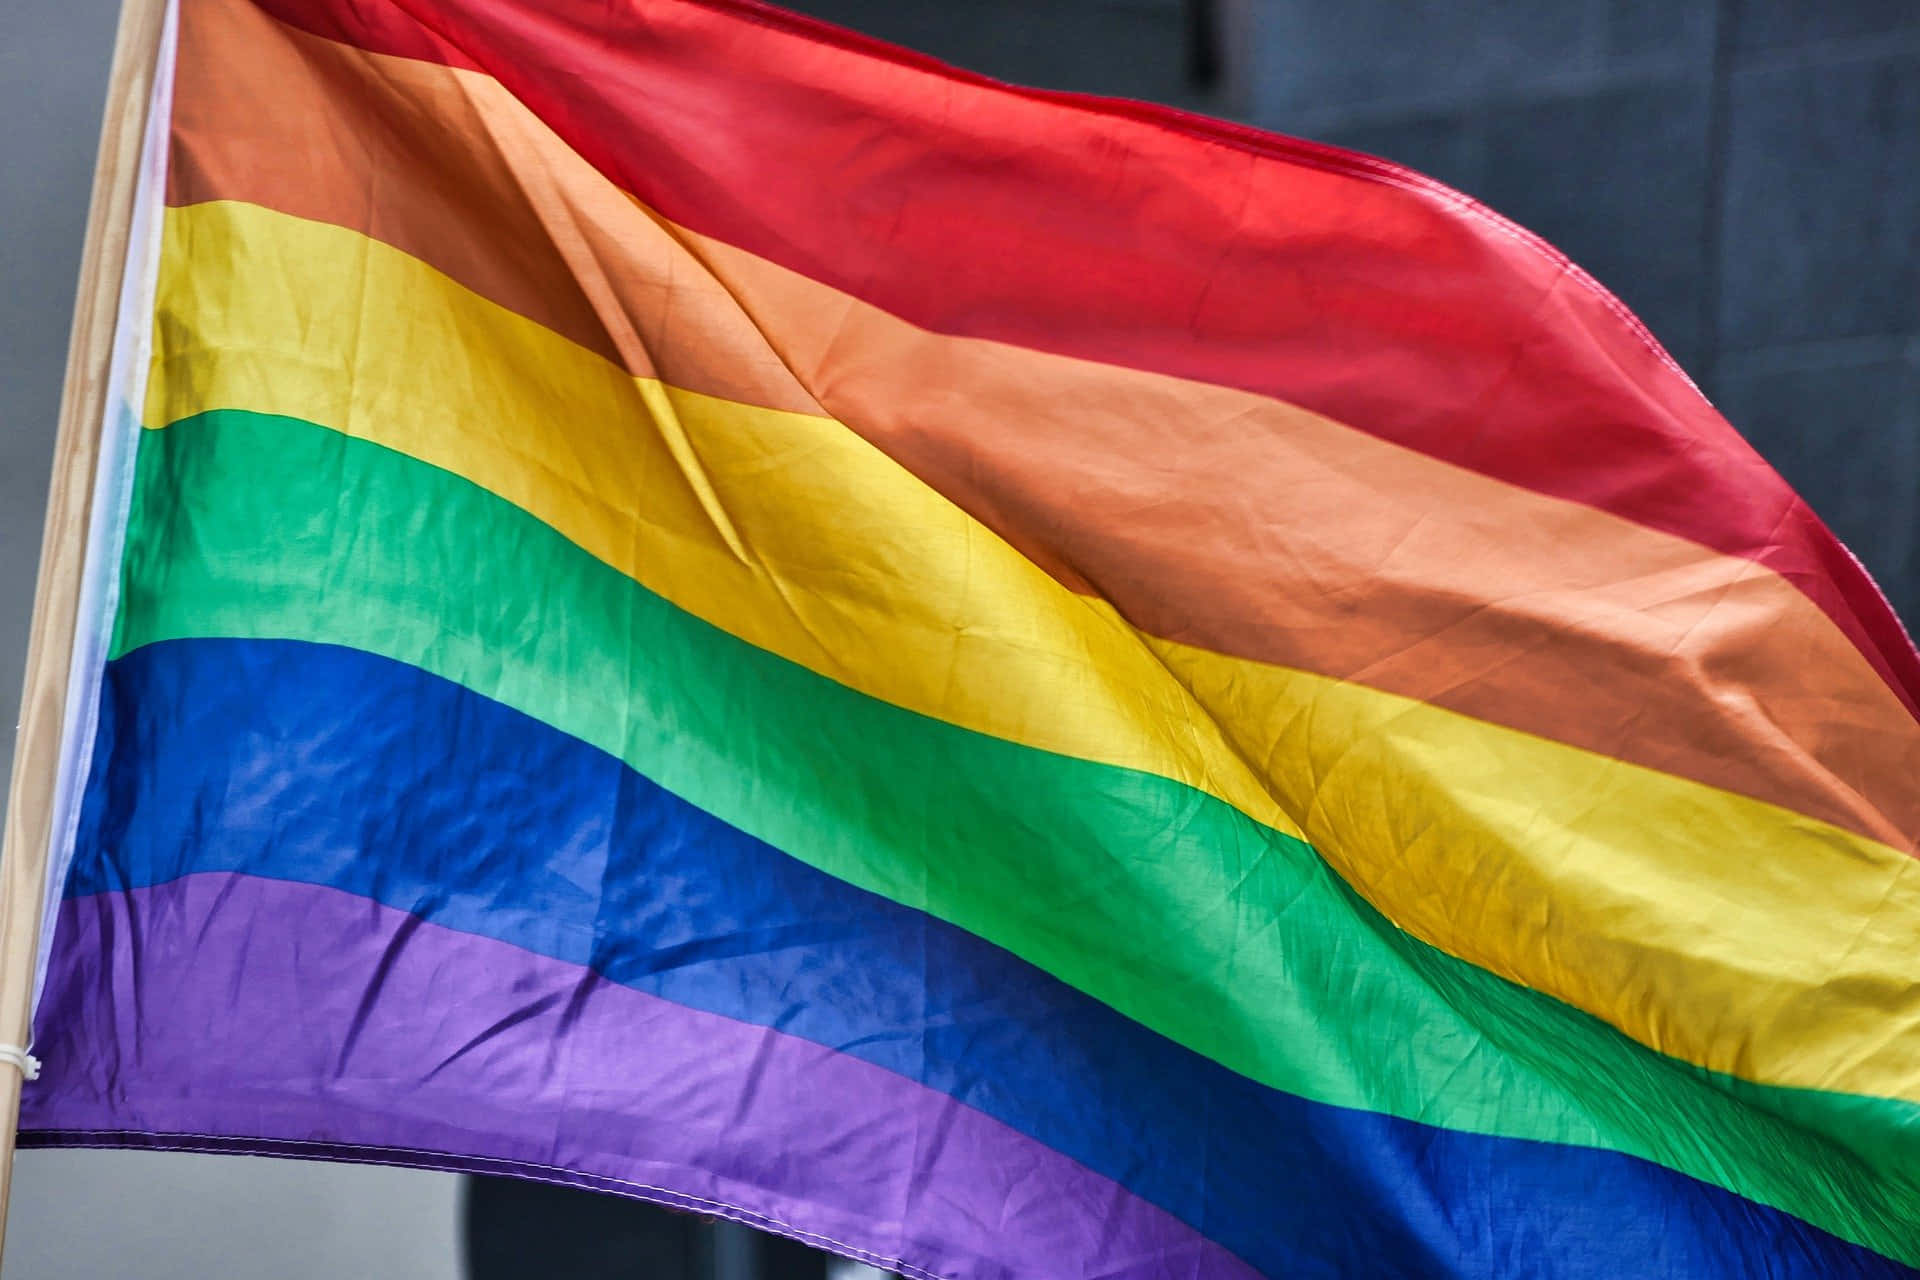 Stoltfirar Och Stödjer #lgbtq-rättigheter - Prideflaggan